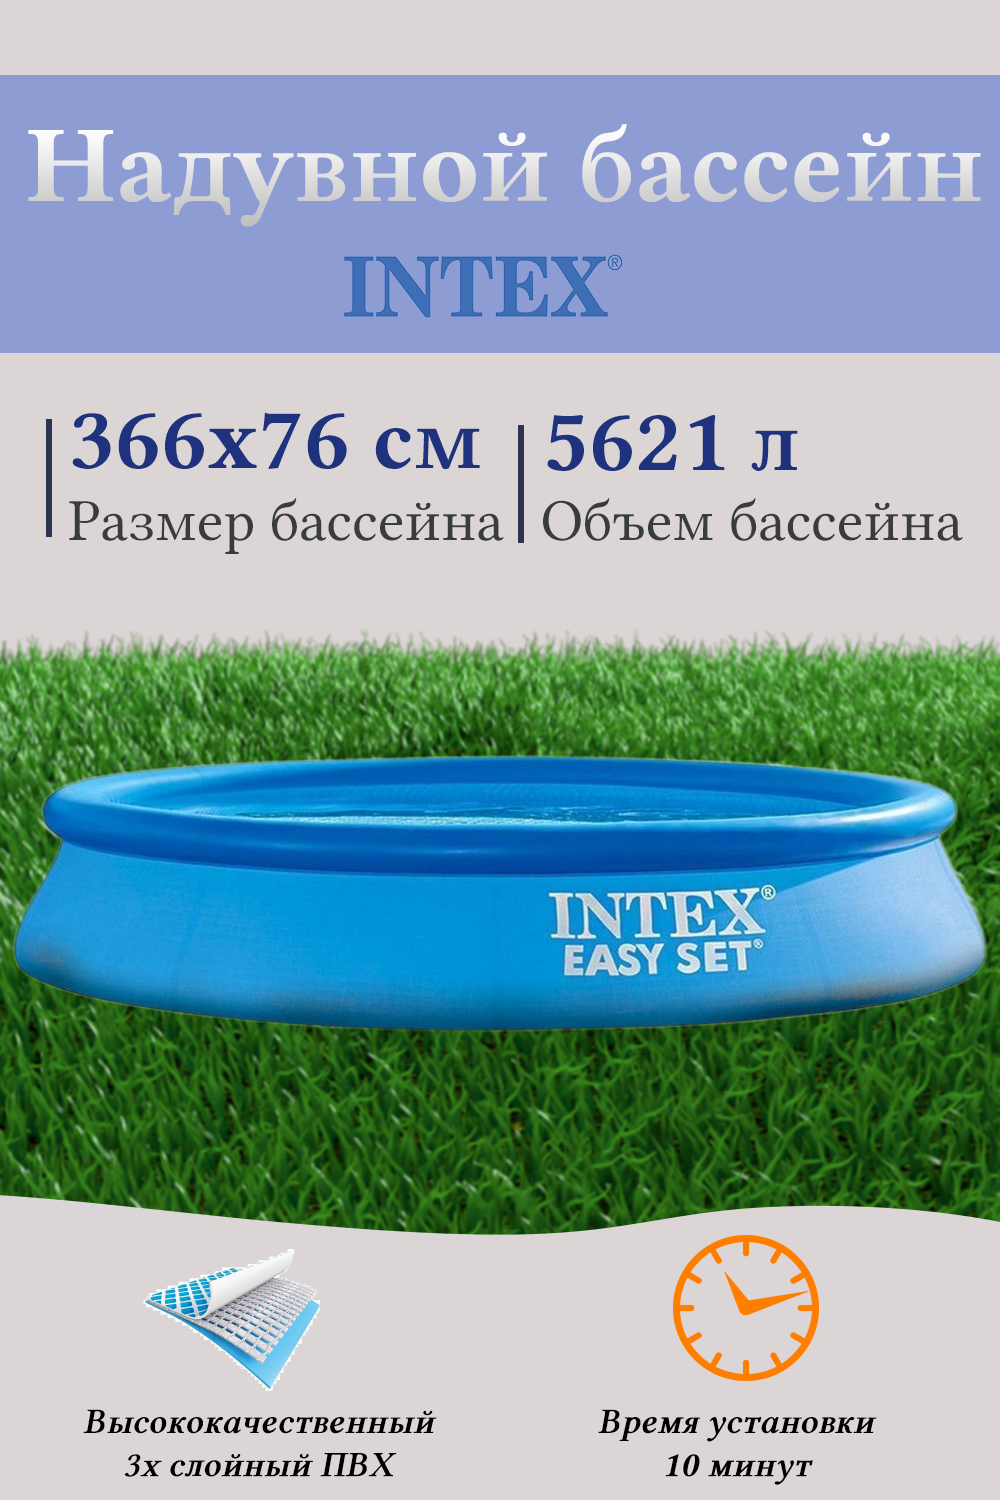 Надувной бассейн INTEX И28130 366х76 см